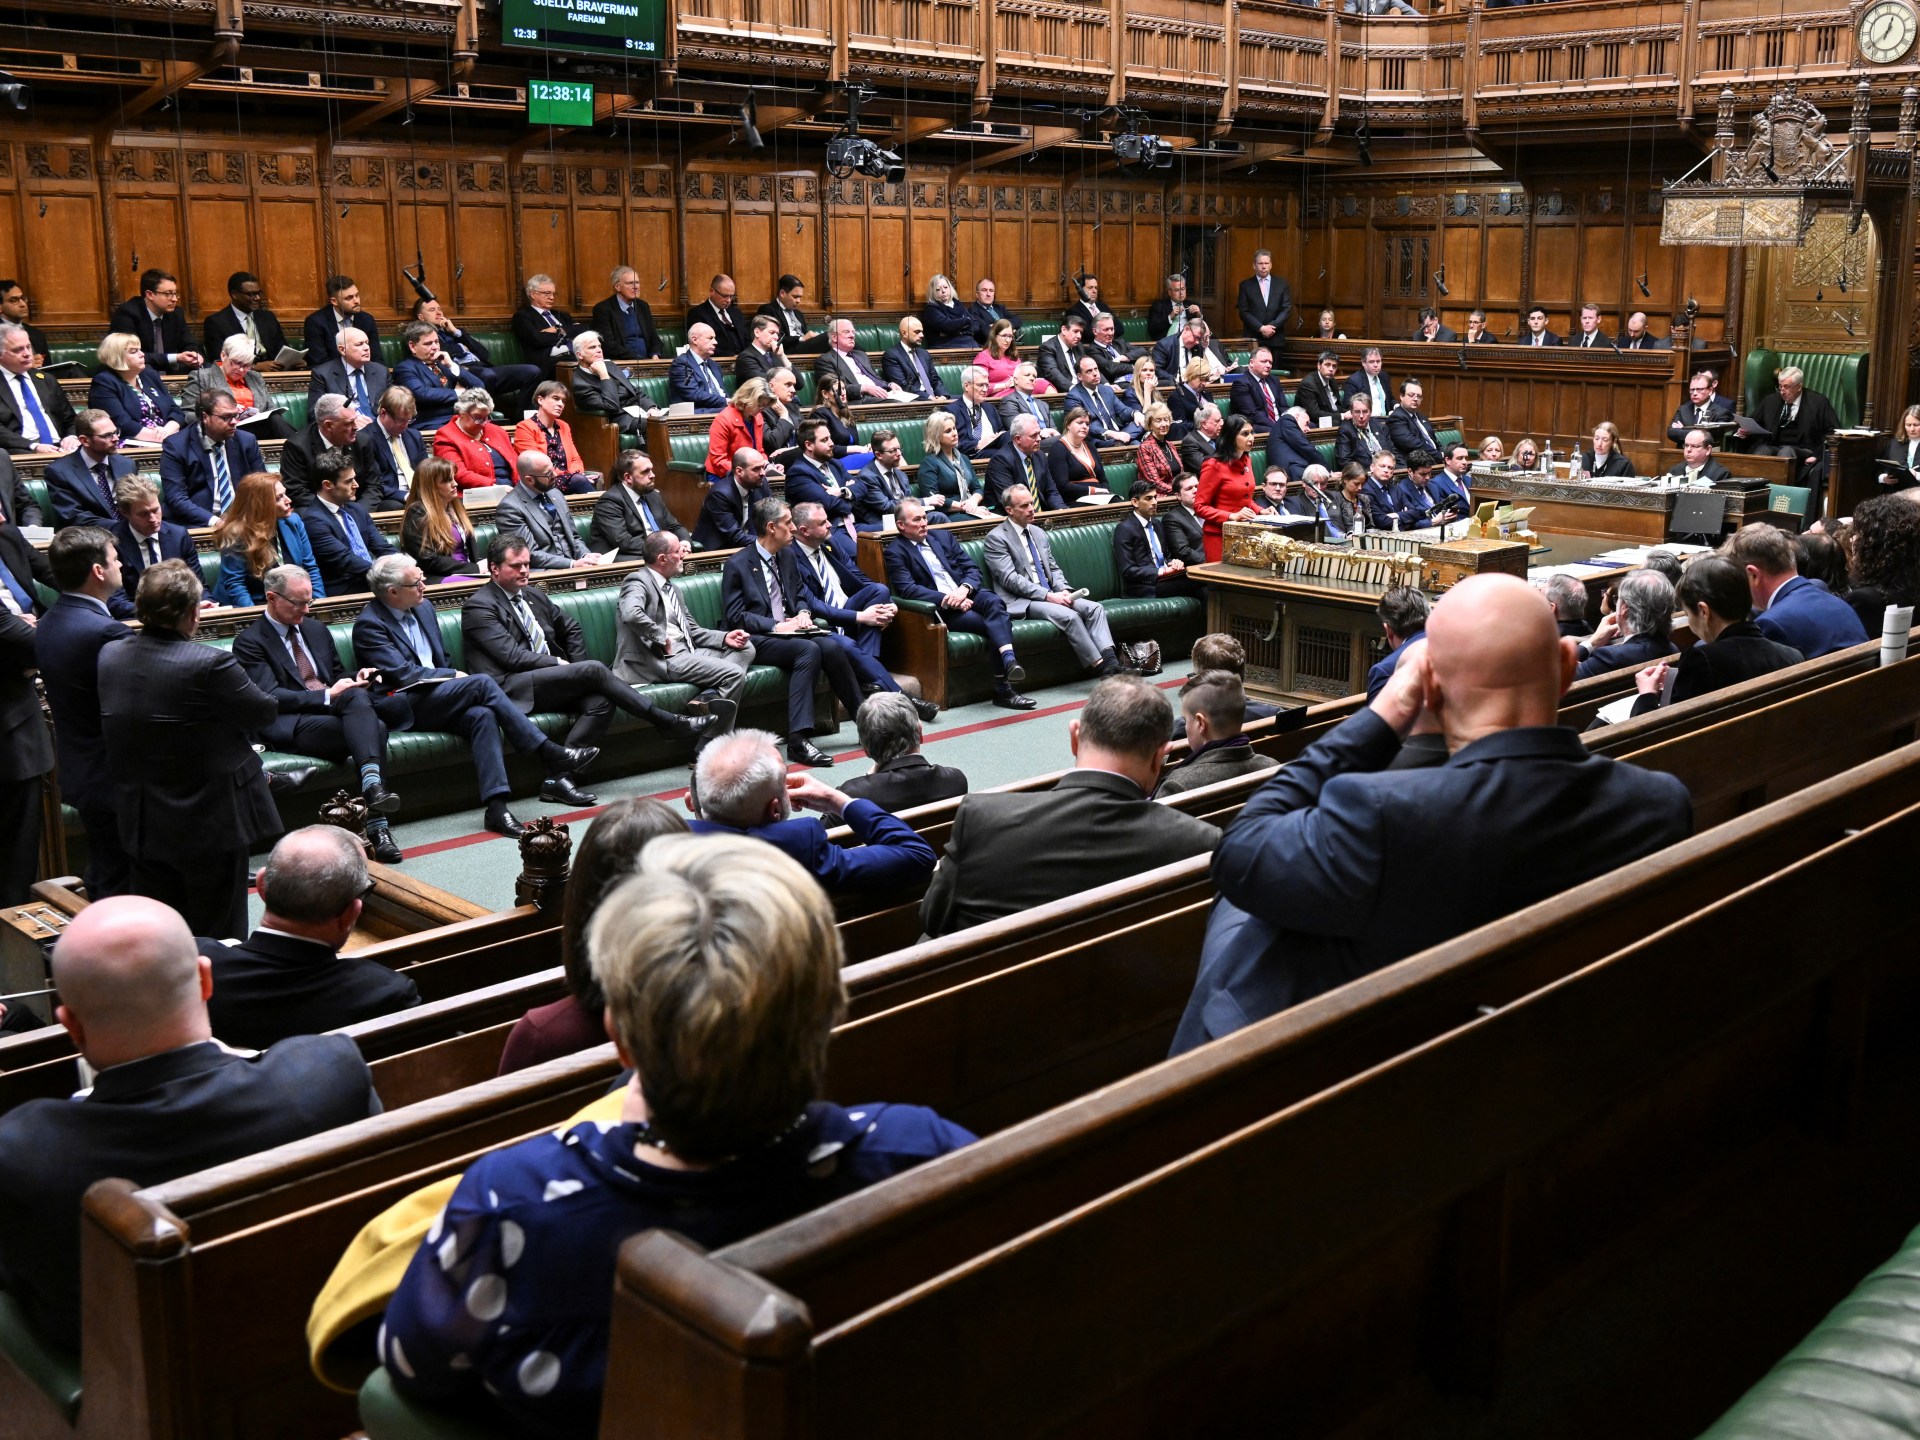 فضائح متتالية في البرلمان البريطاني تهز ثقة الناخبين | أخبار – البوكس نيوز